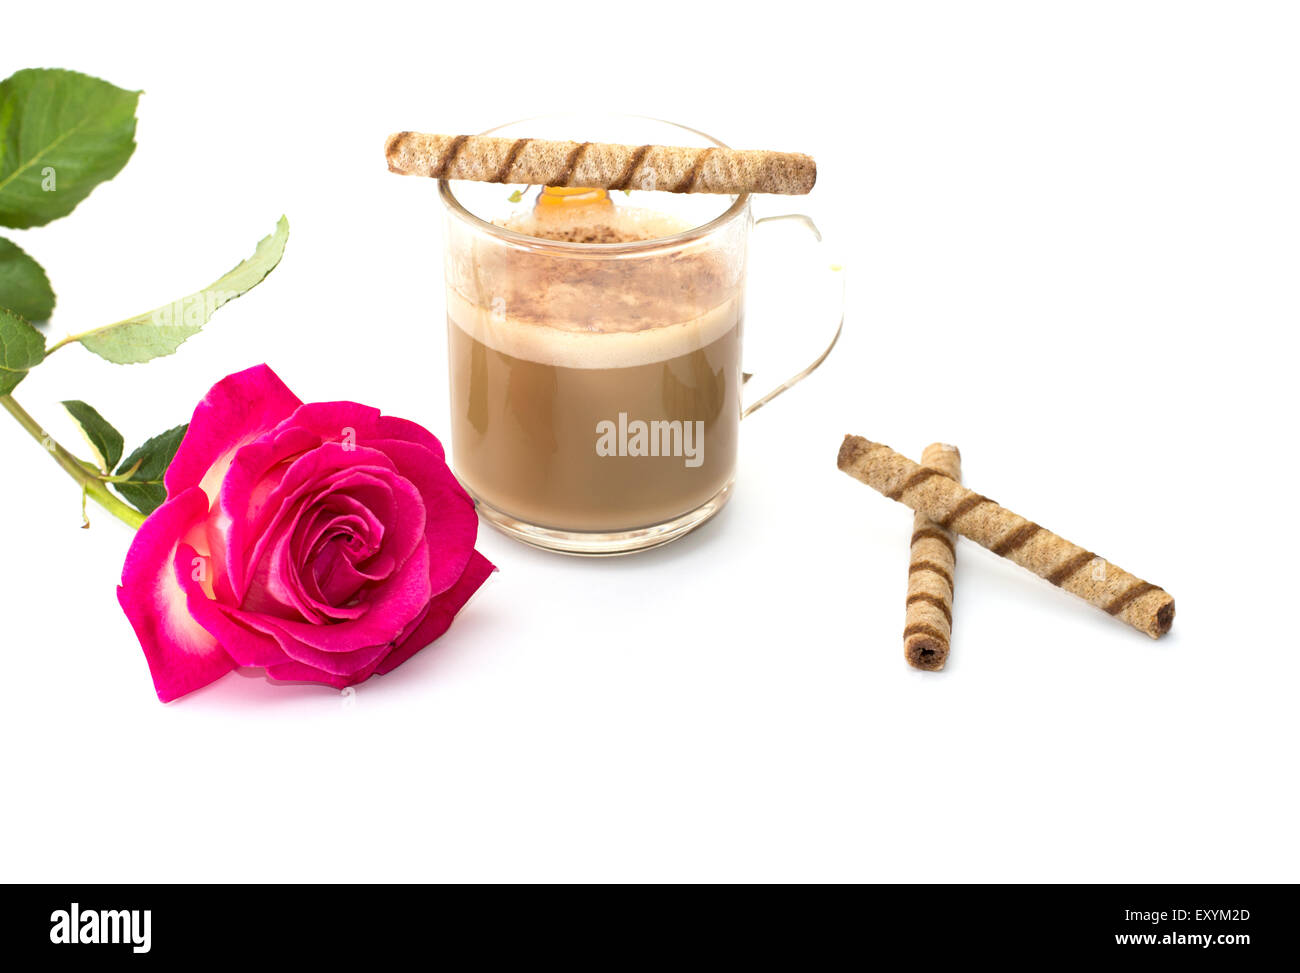 La tazza di cappuccino, cookie e scarlet rose Foto Stock